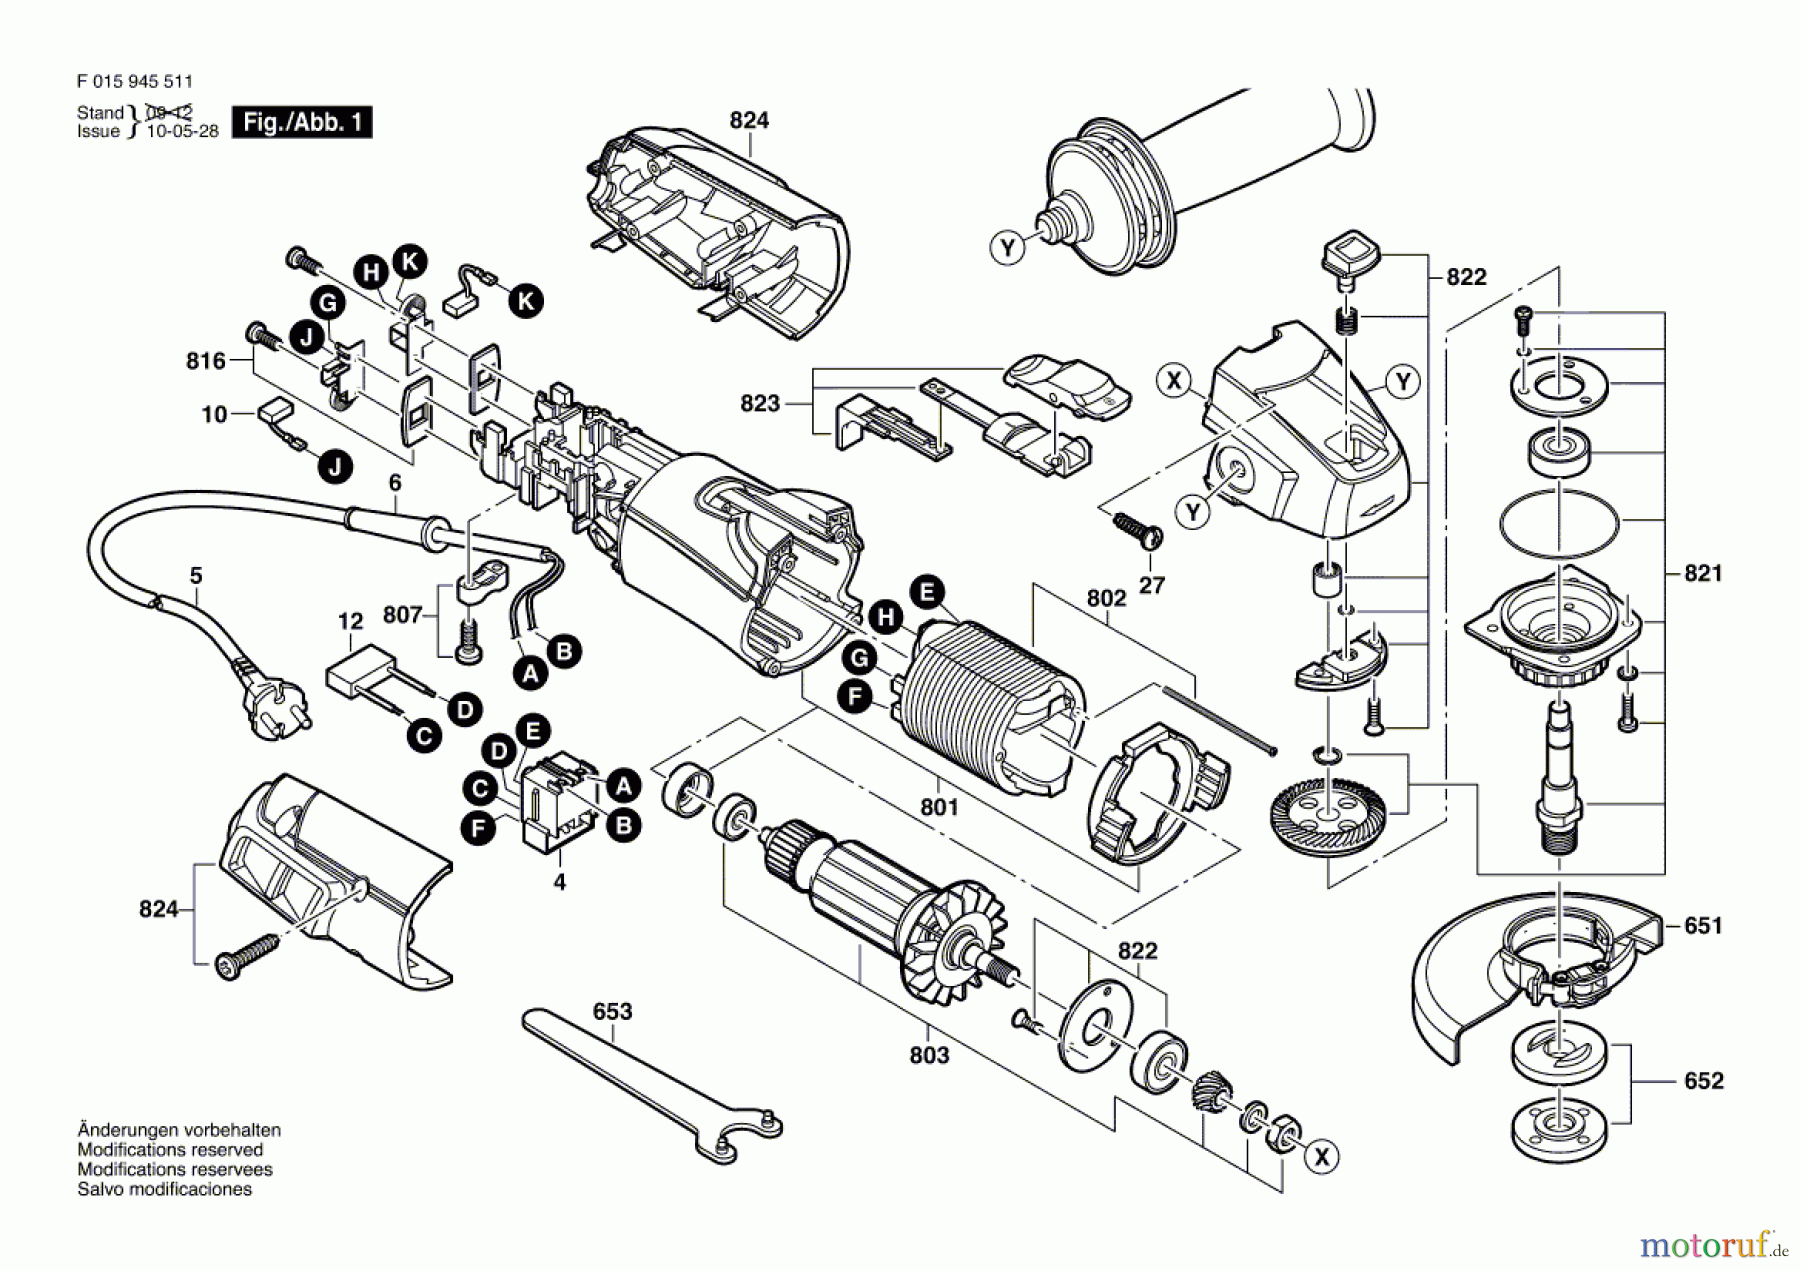  Bosch Werkzeug Winkelschleifer 9455 Seite 1